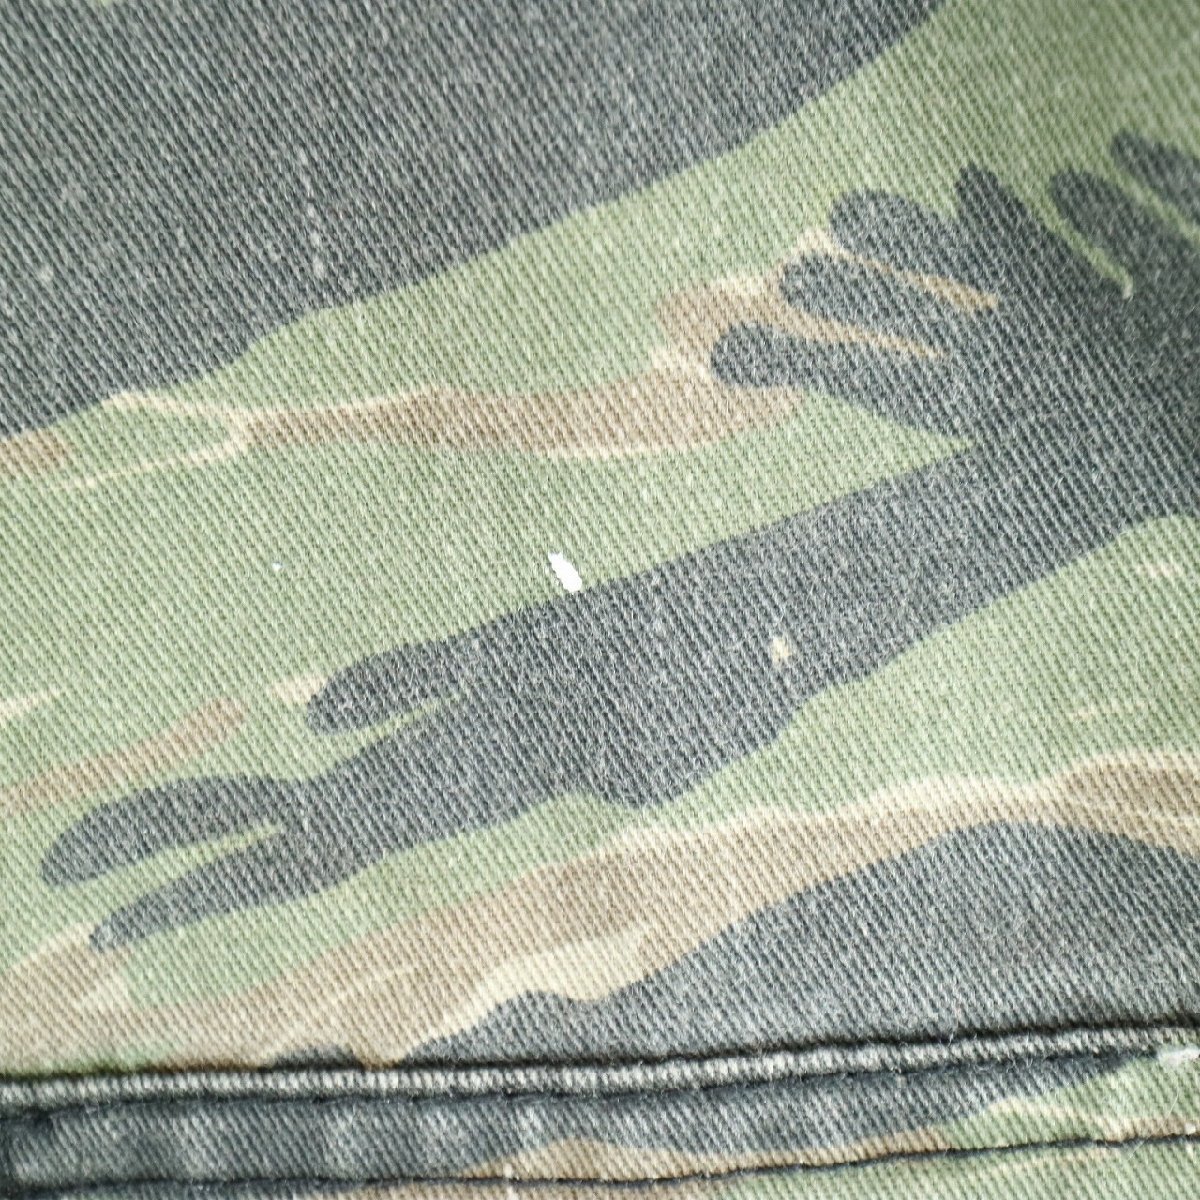 SALE///// 民間品 ROTHCO BDUパンツ モチーフ ミリタリー アメリカ軍 軍服 タイガーカモ 迷彩柄 ( メンズ XLサイズ相当 ) N3950_画像3